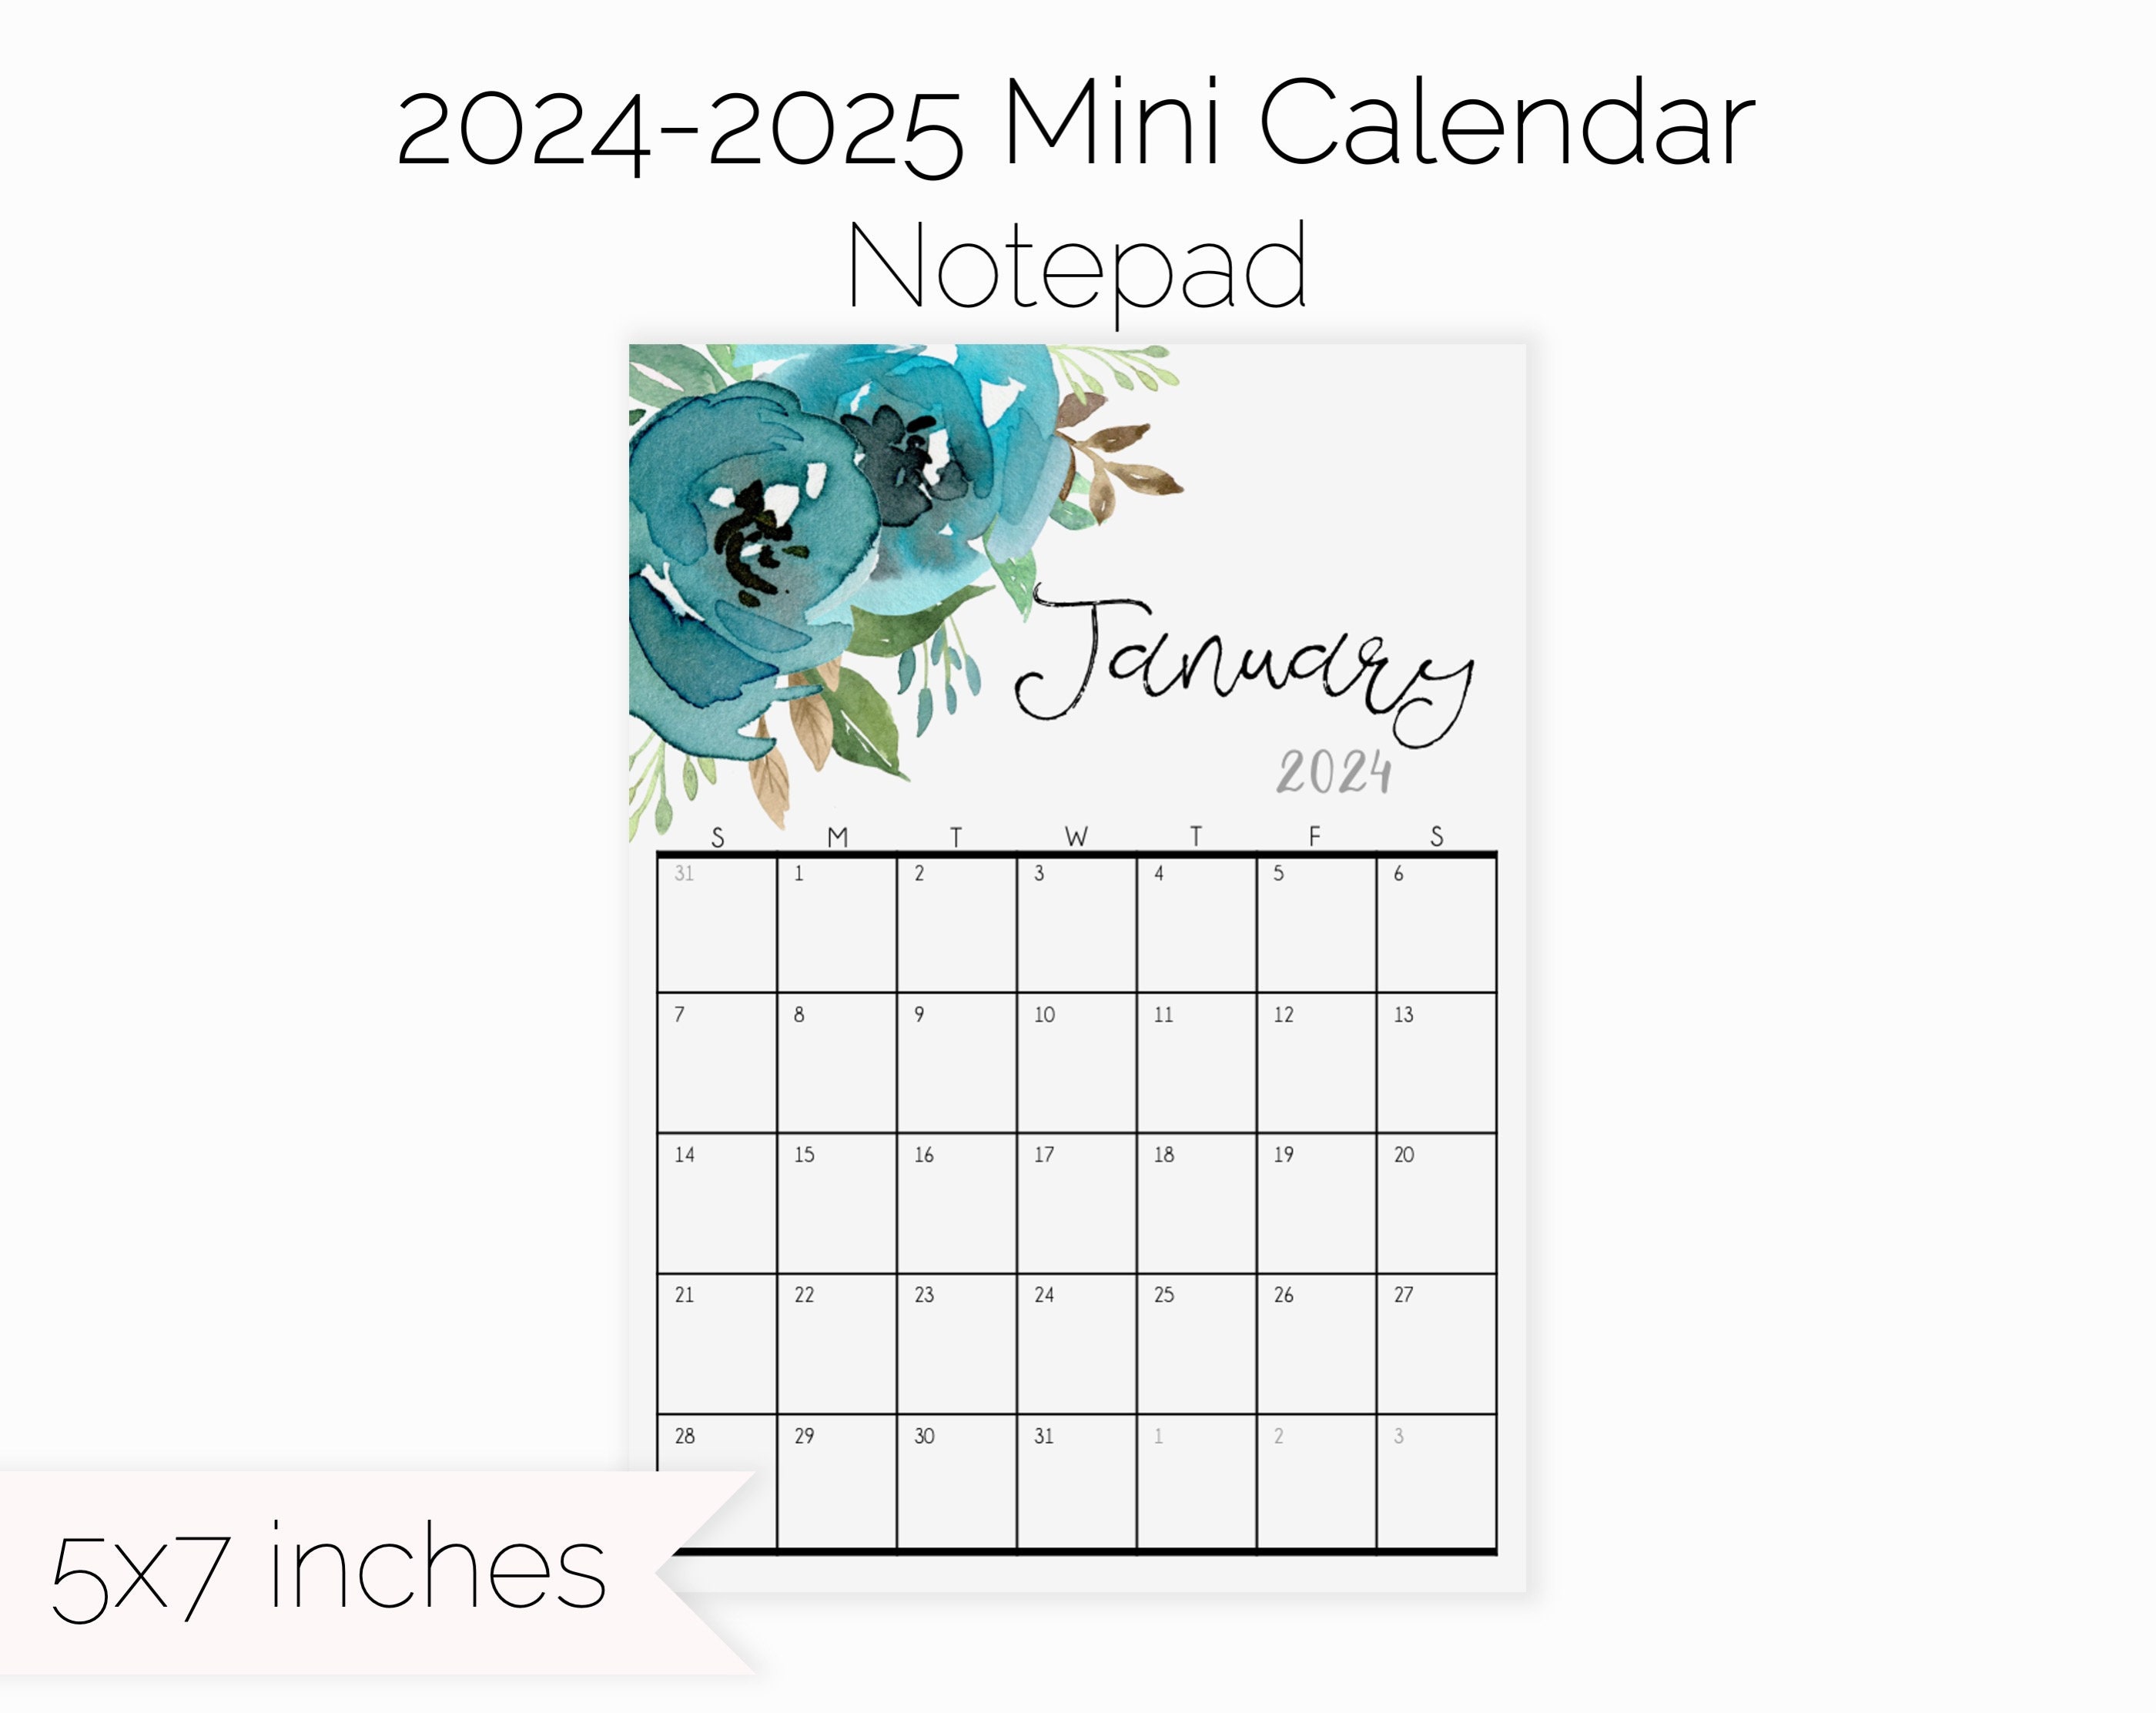 2023 or 2024 Calendar +Pen +Storage Pouches + Paper Fits Louis